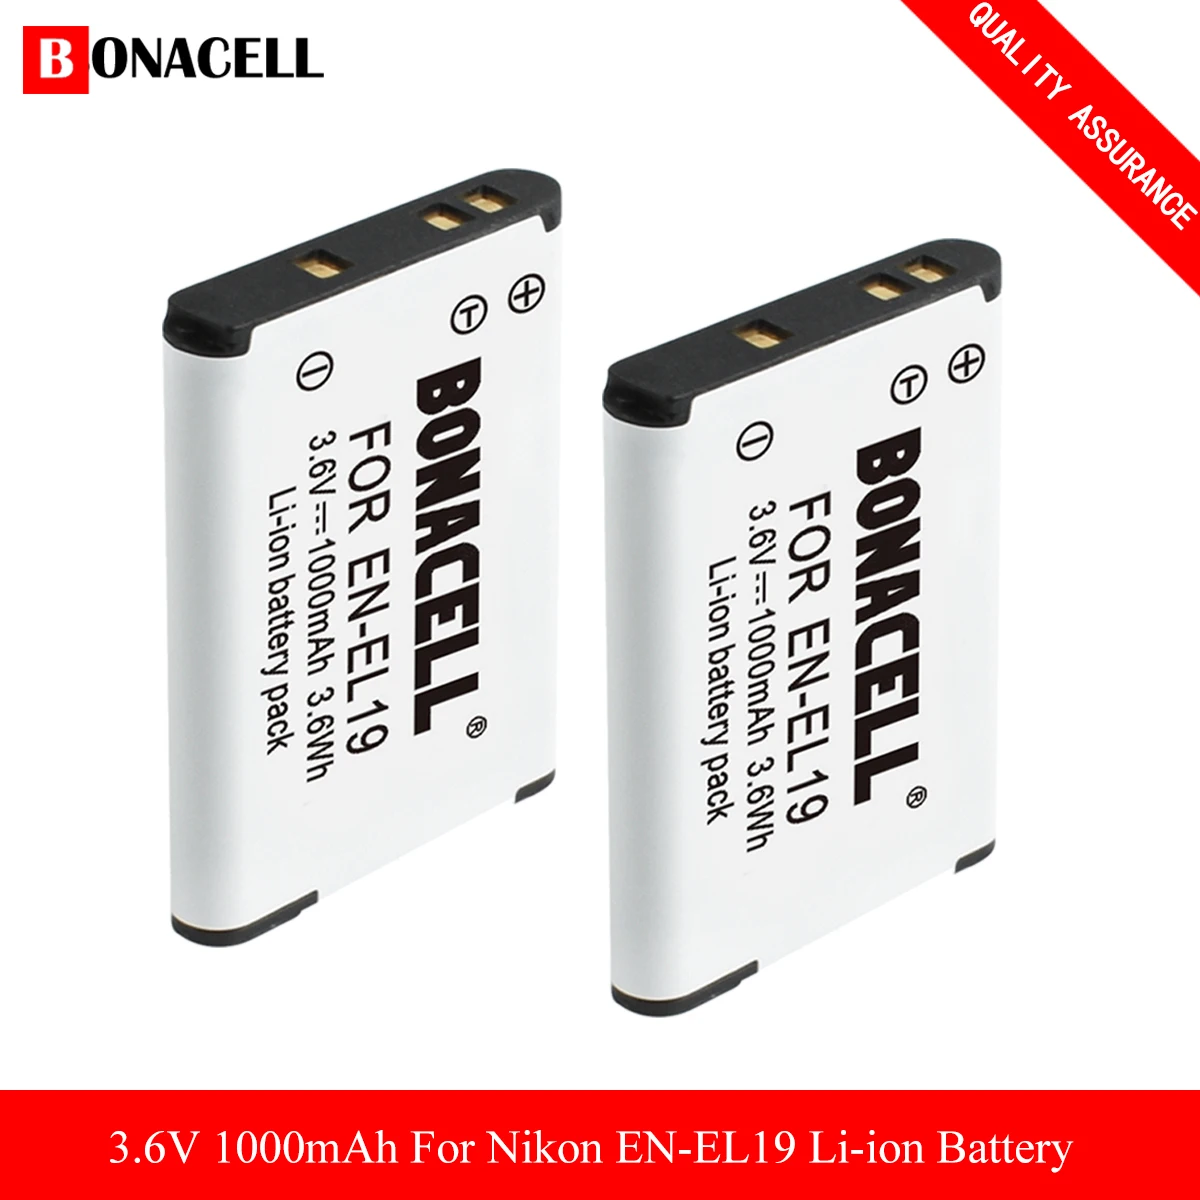 

EN-EL19 Batteries For Nikon Coolpix W150 S32 S100 S2800 S3200 S3300 S3500 S3600 S4100 S4200 S4300 S5200 S5300 S6500 S6600 S6800